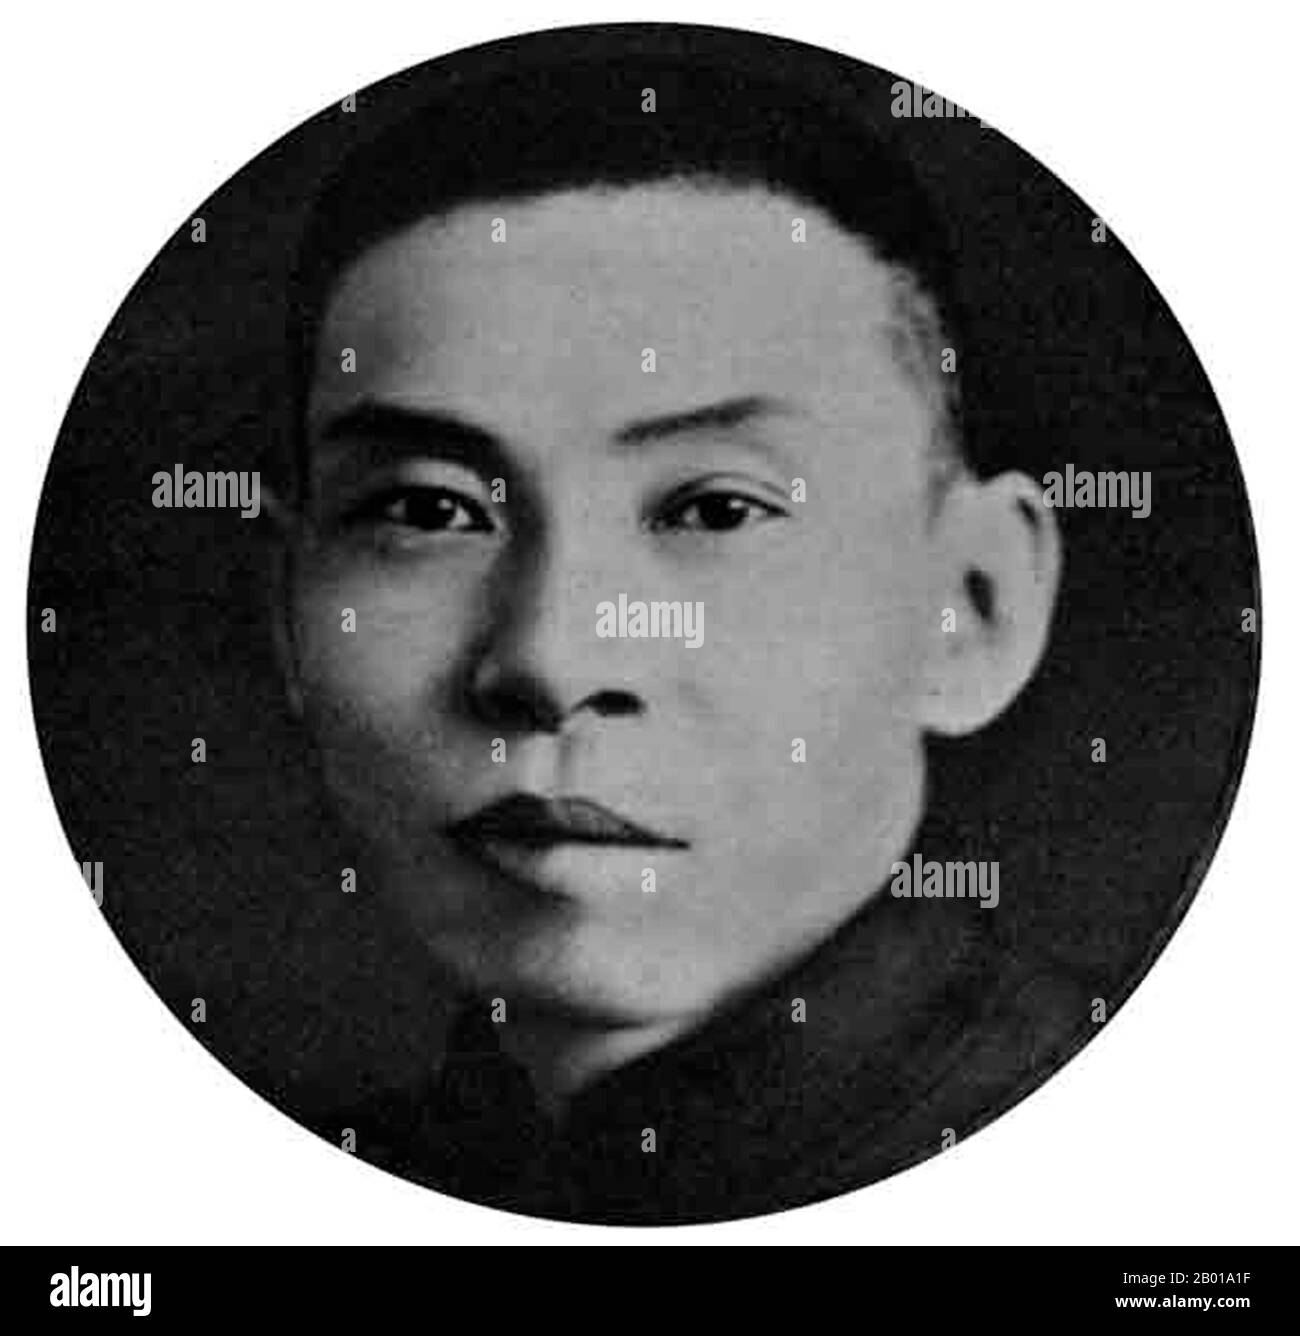 China: Du Yuesheng (22 de agosto de 1888 - 16 de agosto de 1951), gángster verde y padrino de Shanghai, c. 1940s. Du Yuesheng (Tu Yüeh-sheng), comúnmente conocido como 'Big-ears Du', fue un gangster chino que pasó gran parte de su vida en Shanghai. Fue un partidario clave de los Kuomintang (KMT; también conocidos como nacionalistas) y Chiang Kai-shek en su batalla contra los comunistas durante el 1920s, y fue una figura de cierta importancia durante la Segunda Guerra Sino-Japonesa. Después de la Guerra Civil China y el retiro del KMT a Taiwán, Du se exilió en Hong Kong y permaneció allí hasta su muerte en 1951. Foto de stock